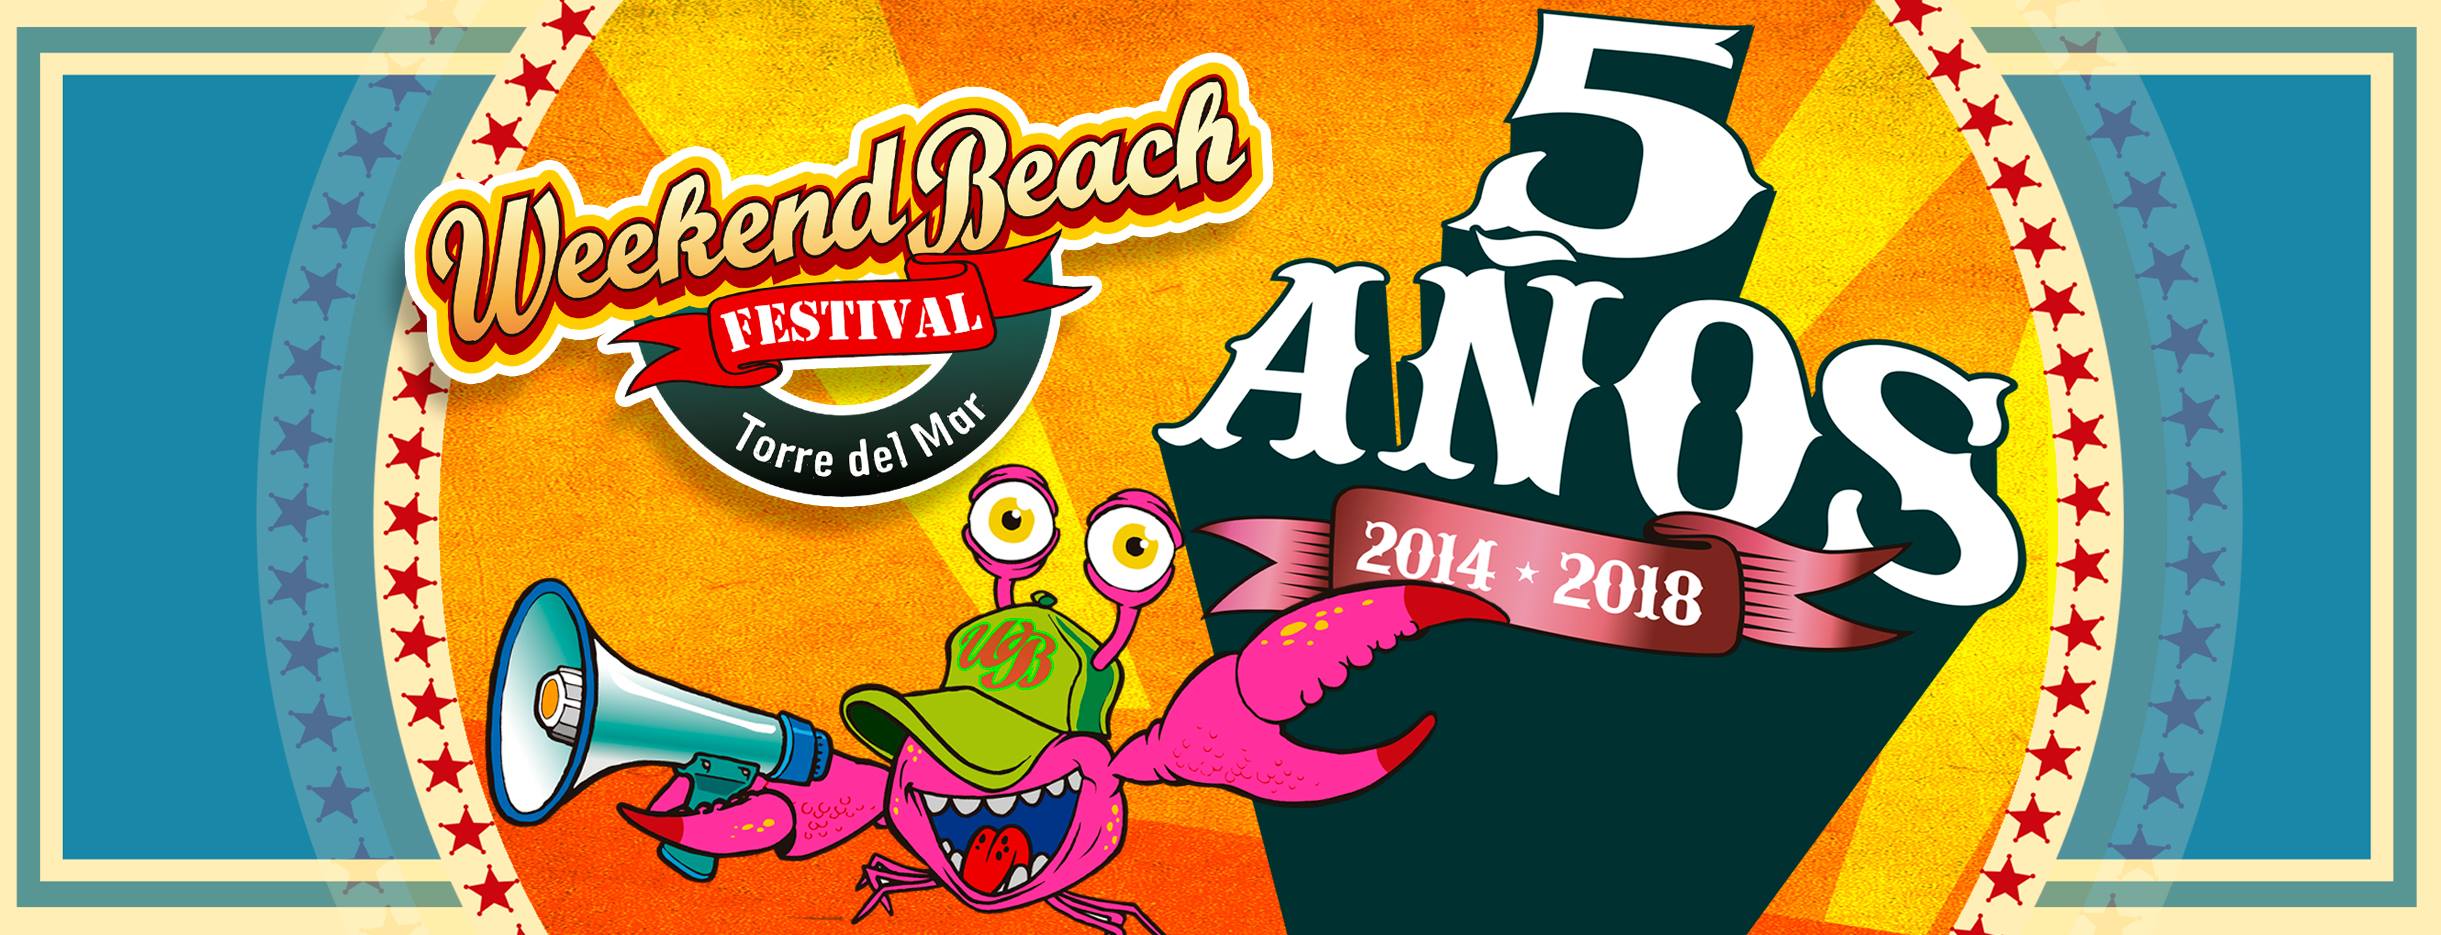 Abonos y entradas WEEKEND BEACH FESTIVAL TORRE DEL MAR 2018 (Málaga)